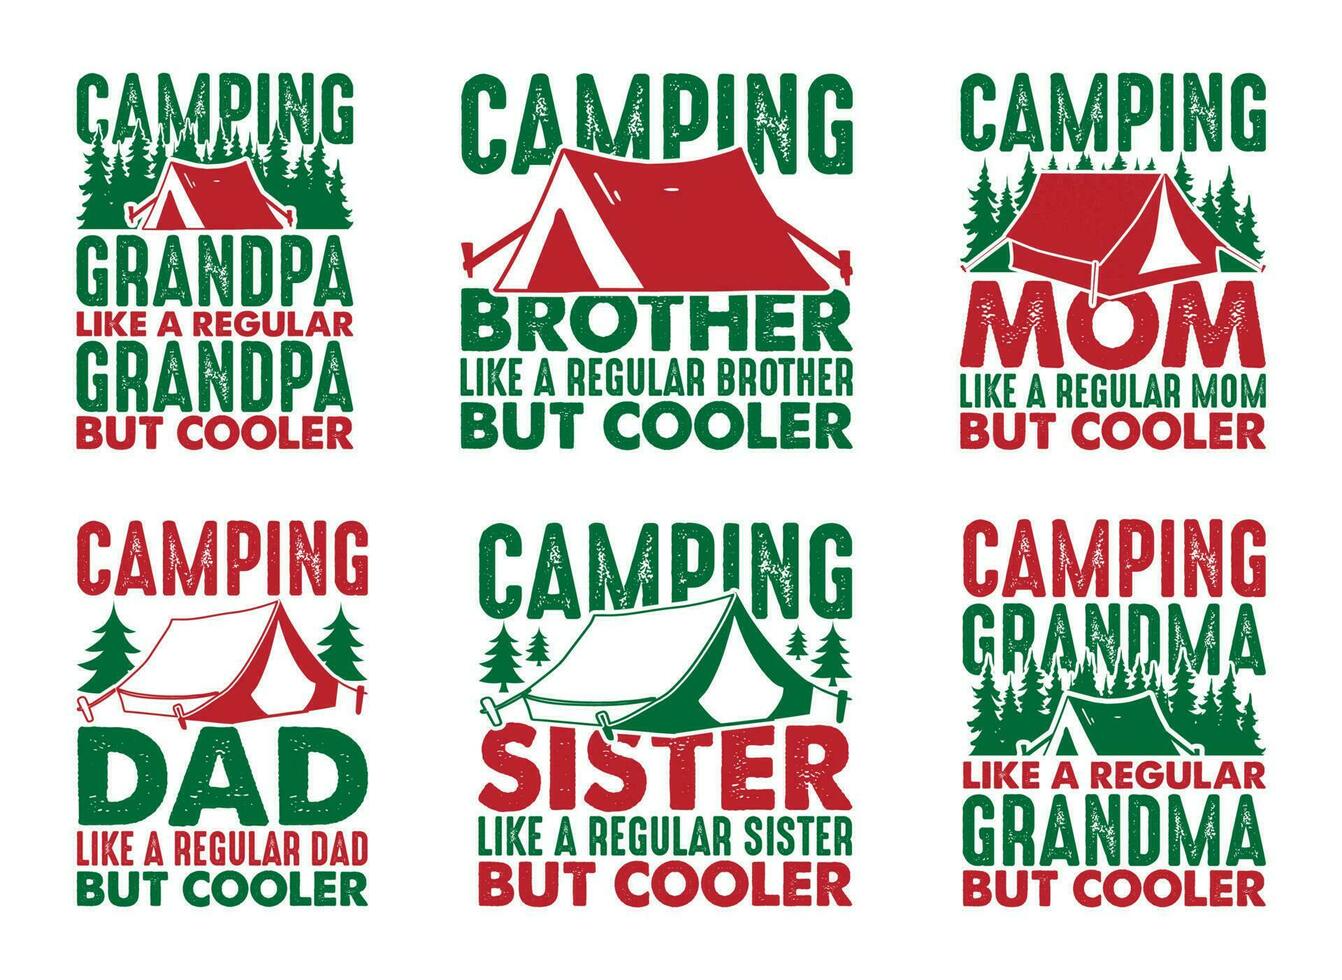 camping pappa tycka om en regelbunden pappa men kylare t skjorta design bunt, citat handla om camping, äventyr, utomhus, camping t skjorta, vandring, camping typografi t skjorta design samling vektor